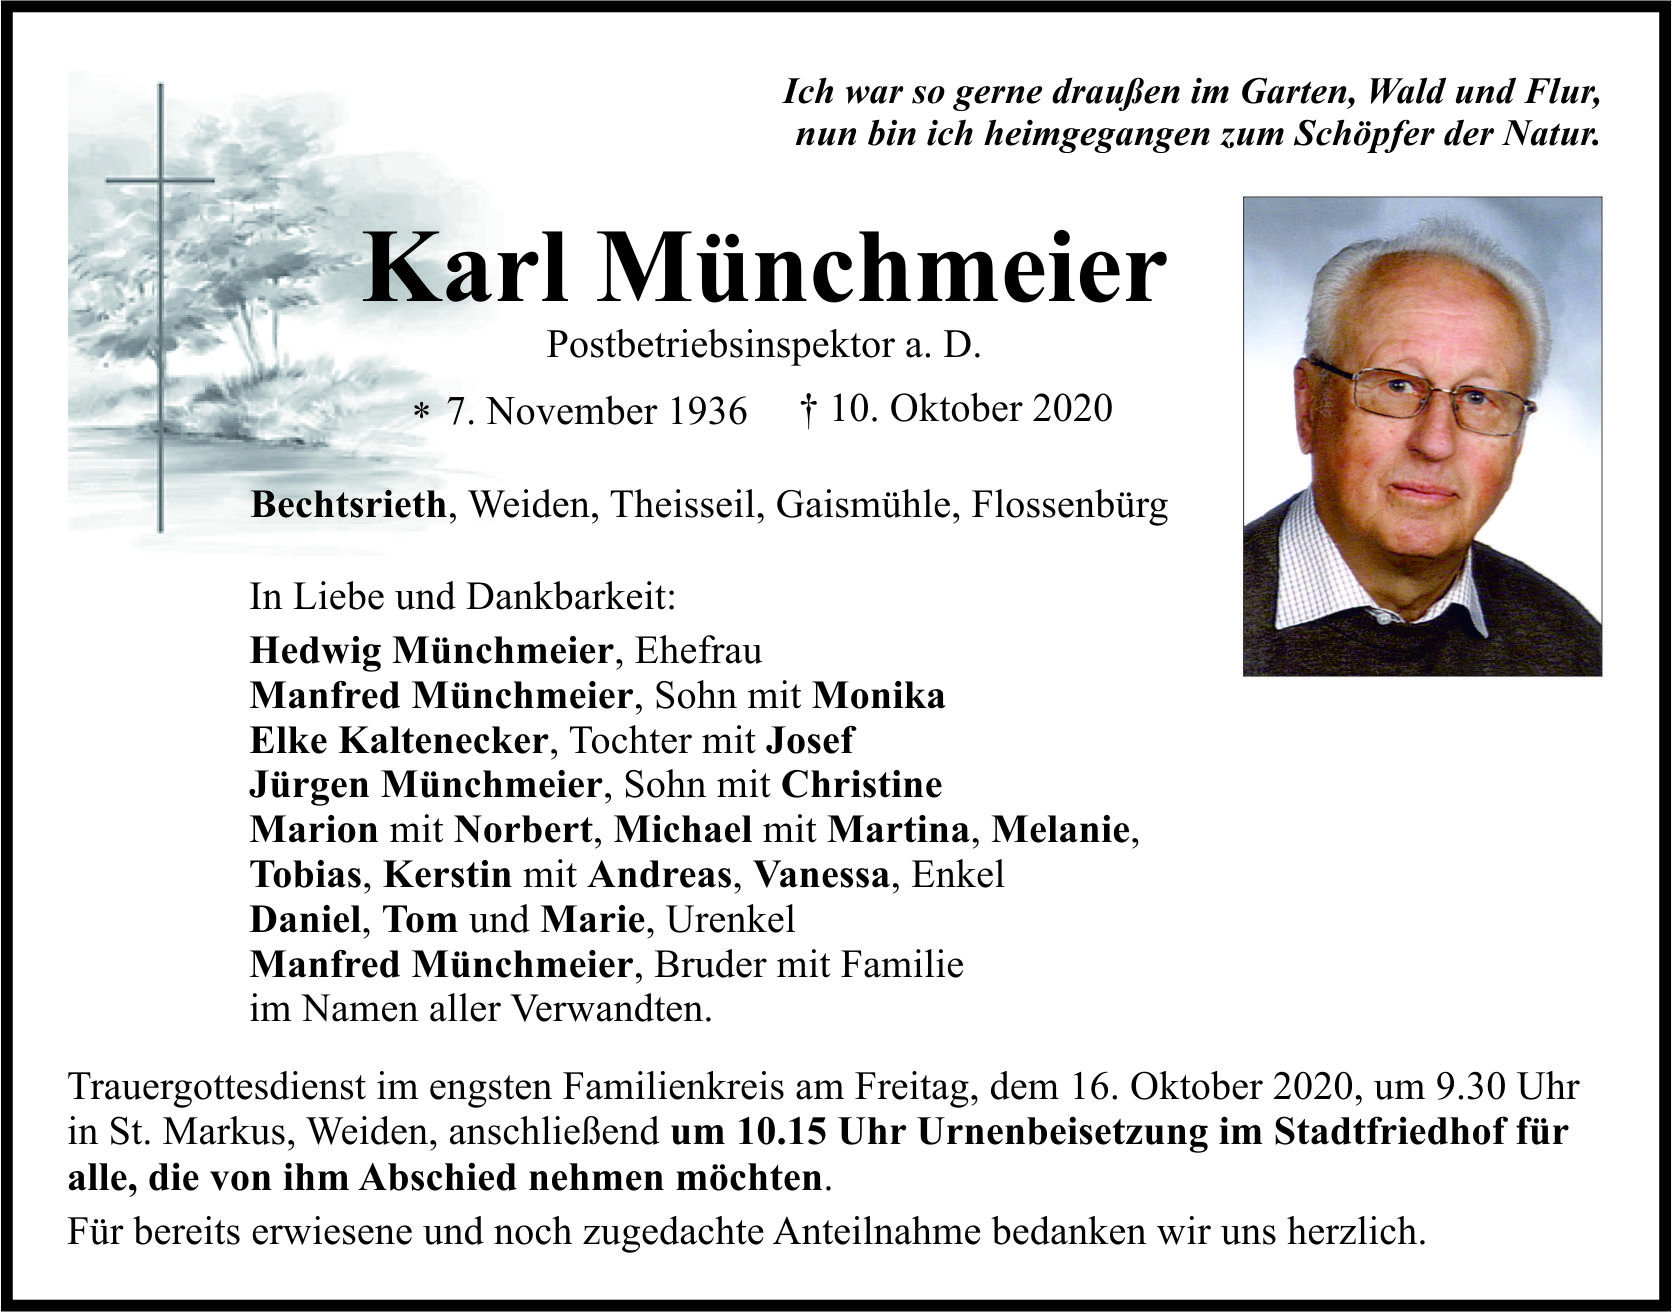 Traueranzeige Karl Münchmeier, Bechtsrieth